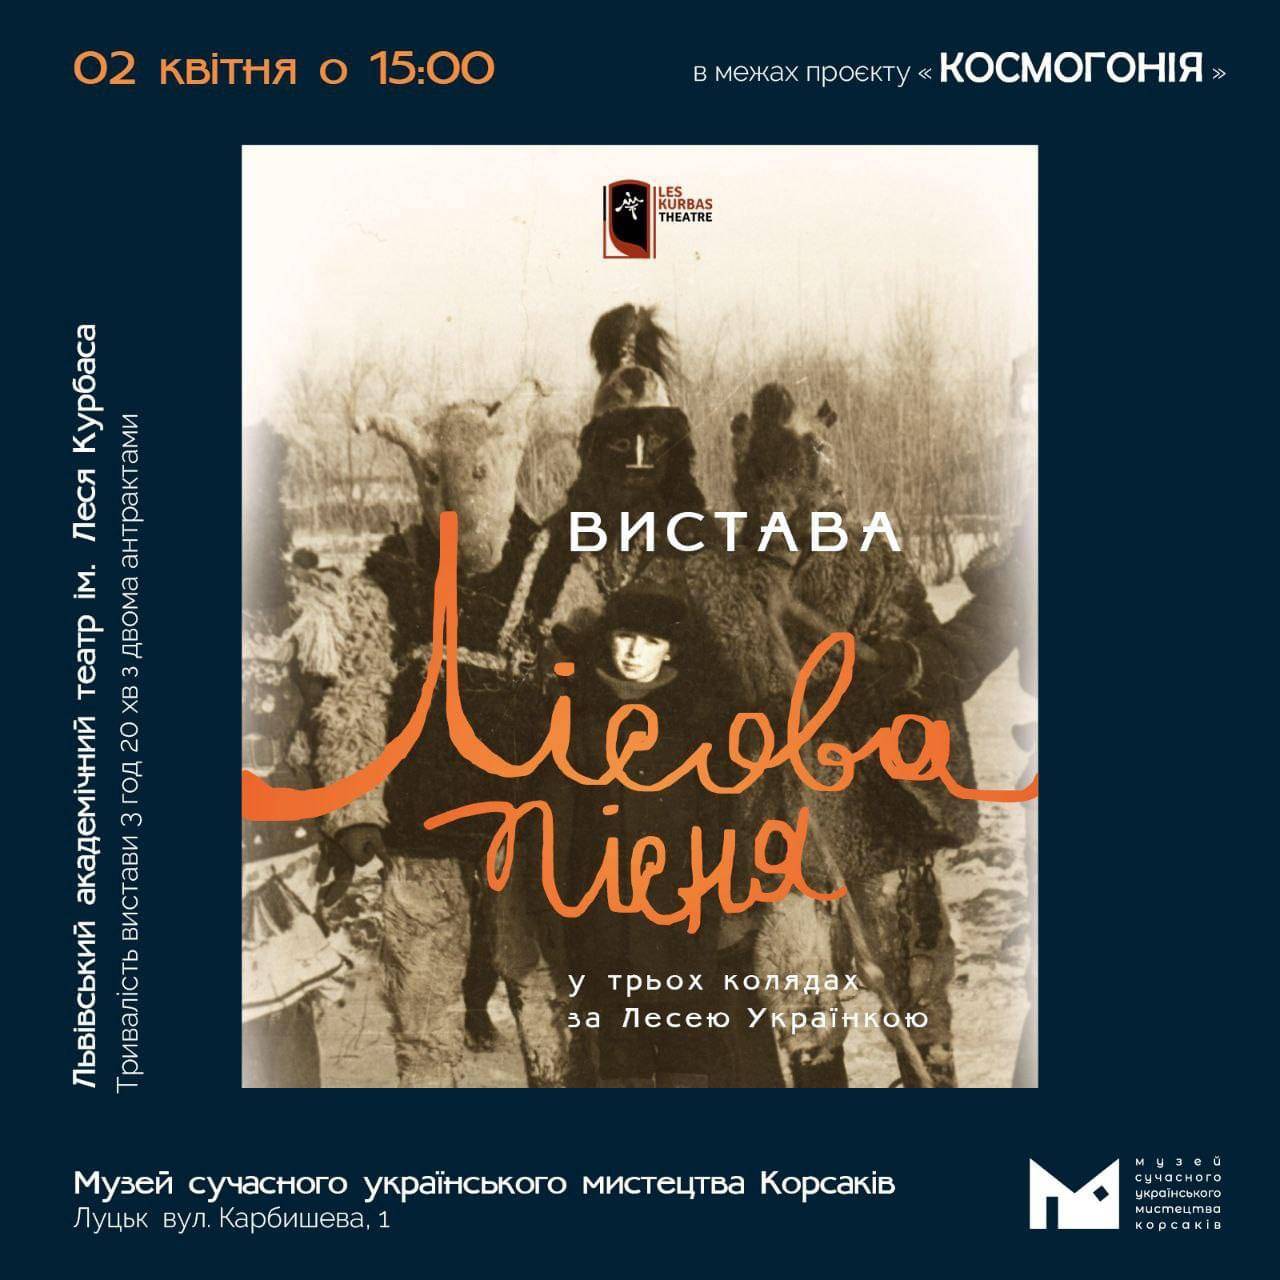 2 квітня о 15:00 у МСУМК відбудеться благодійна вистава «ЛІСОВА ПІСНЯ» від театру Леся Курбаса в Луцьку!